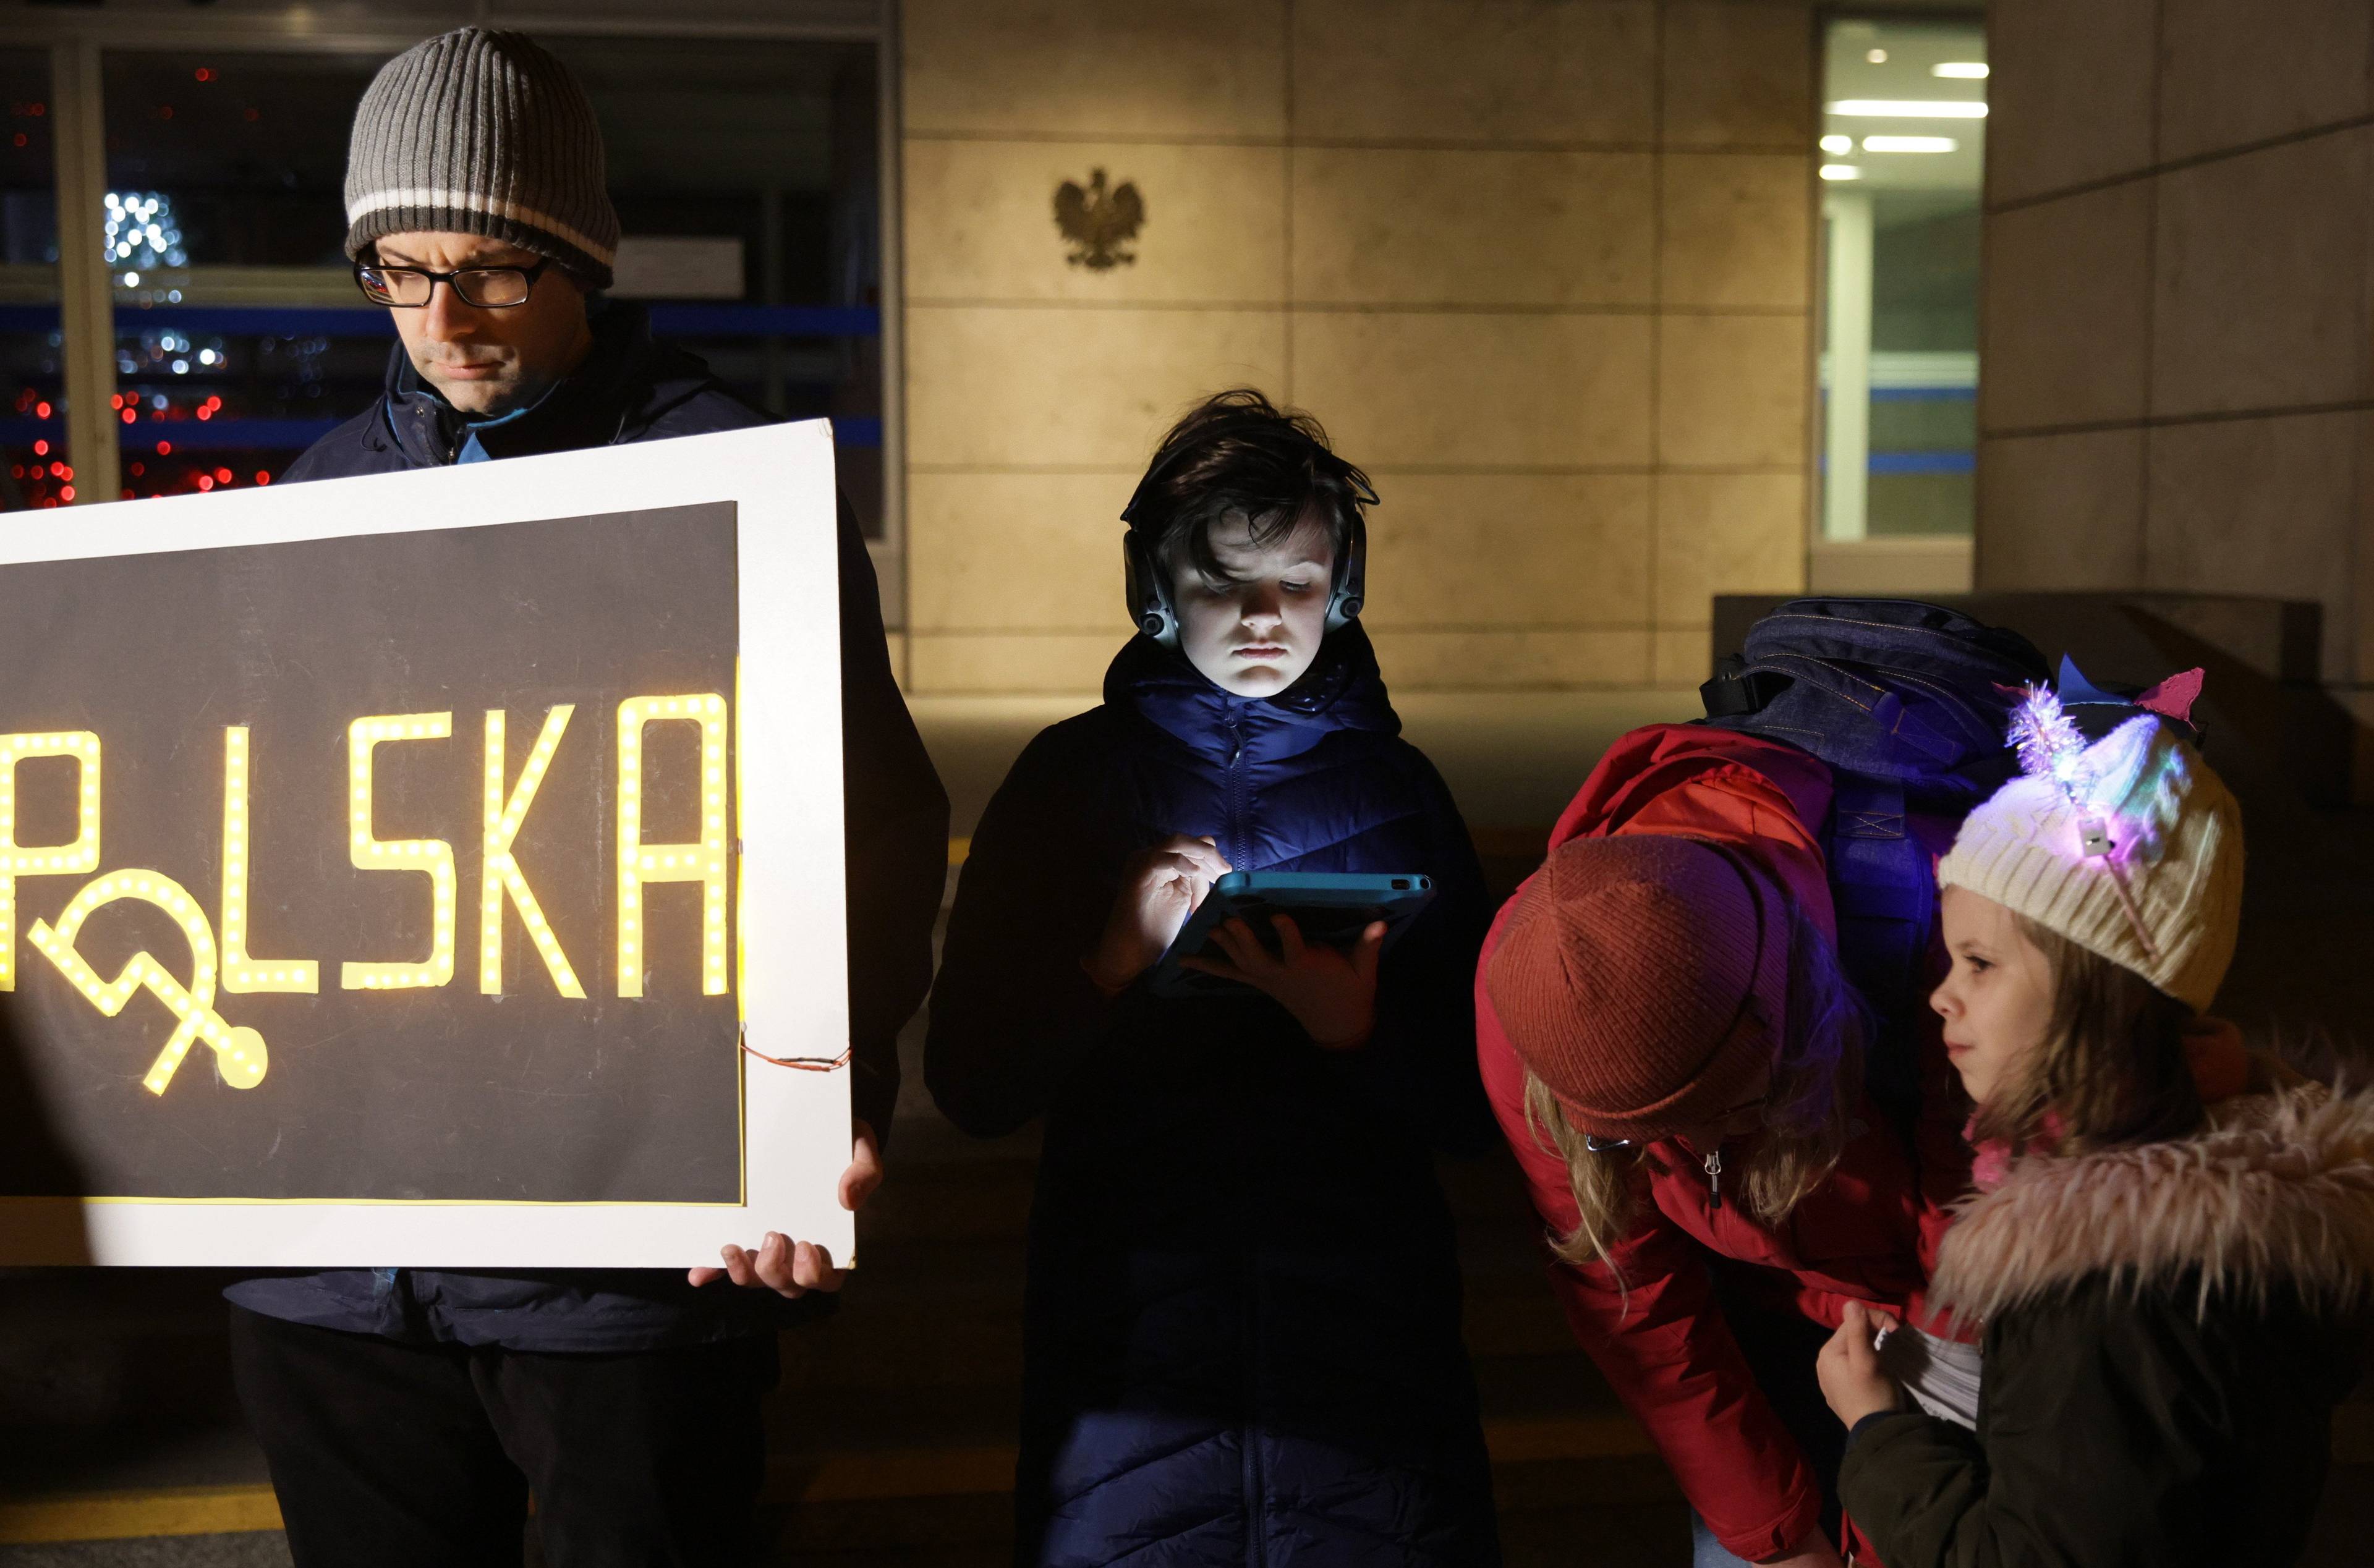 Grupa ludzi ze spuszczonymi głowami trzyma transparent POLSKA, w którym O jest zastapione znakiem wywróconego wózka inwalidzkiego